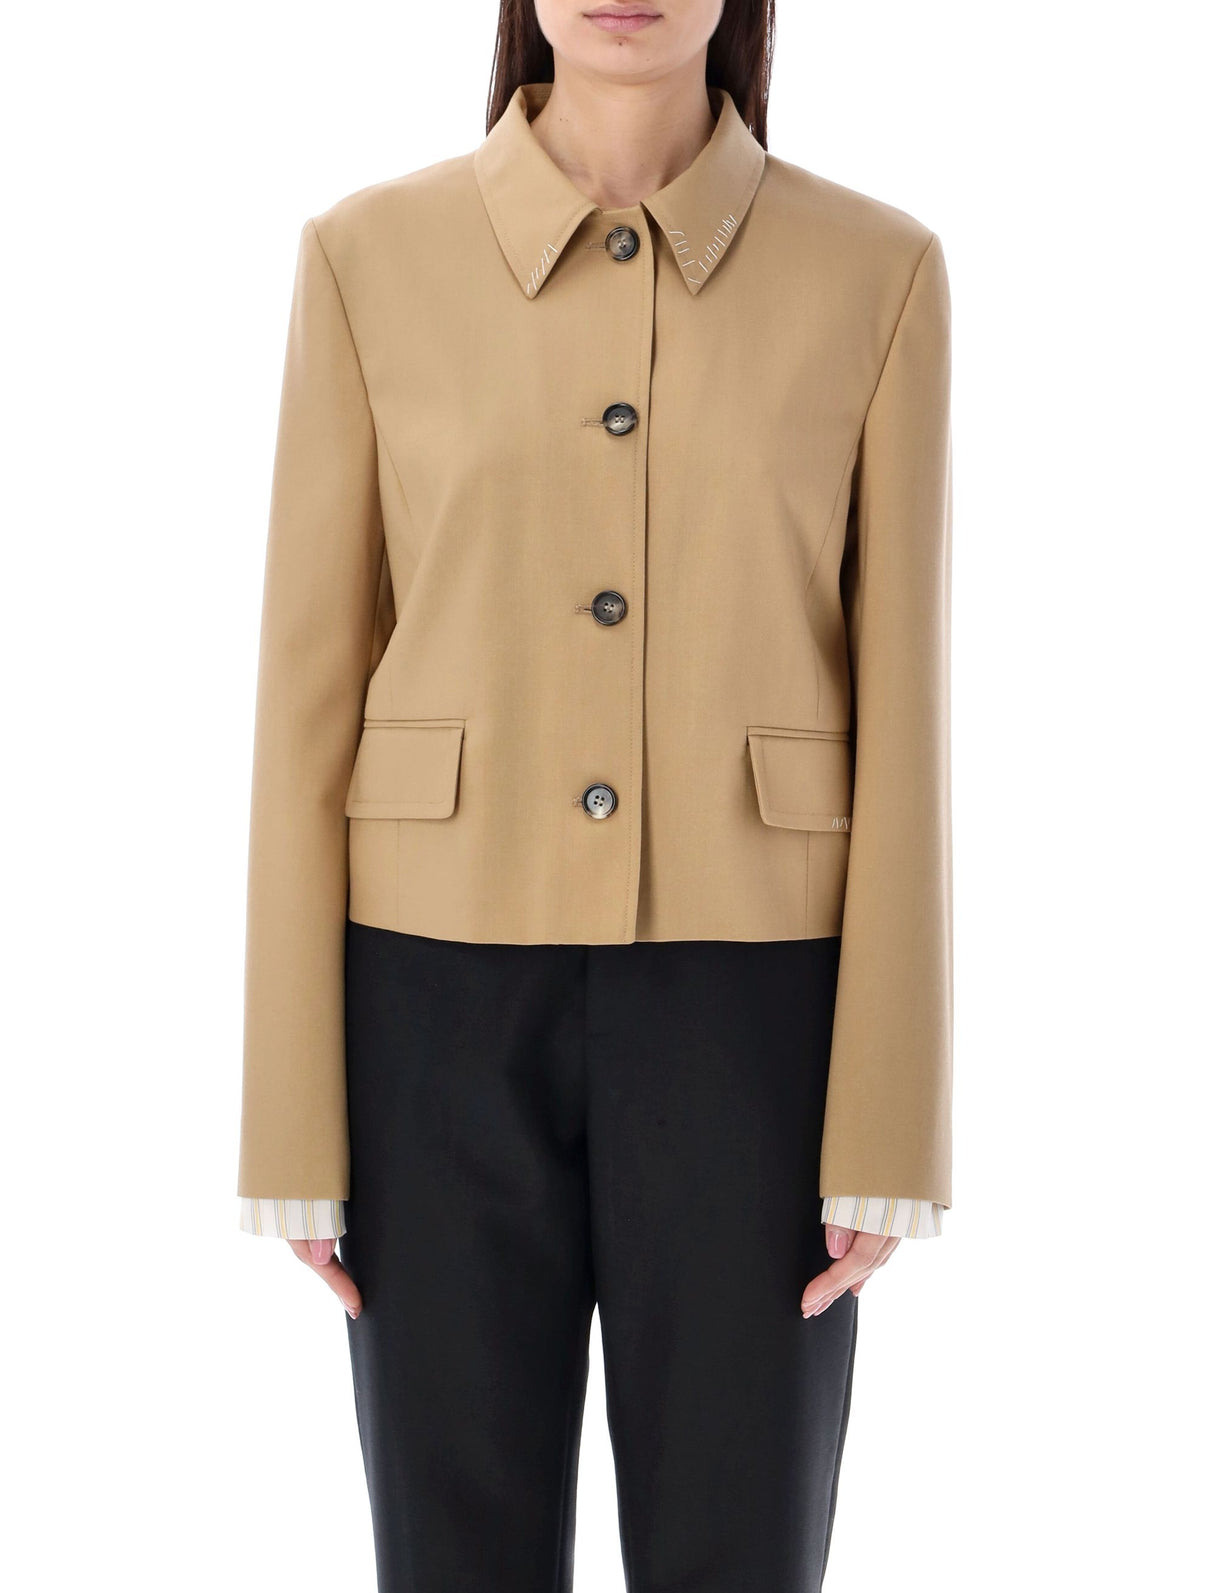 Áo blazer cắt ngắn màu be cho phái nữ bởi MARNI cho mùa SS24